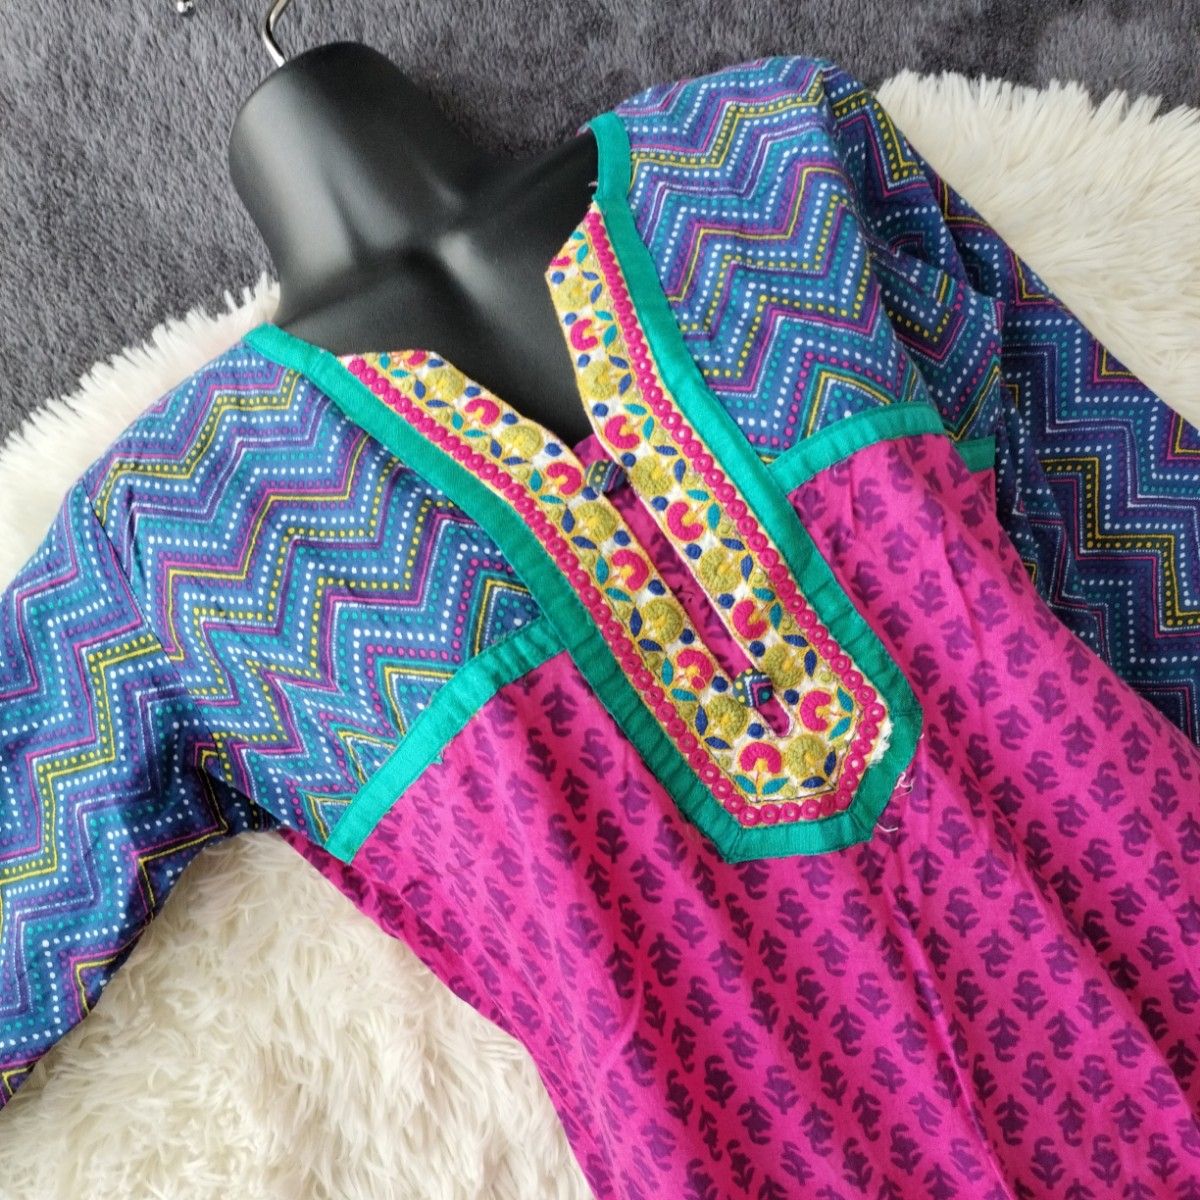 エスニック アジアン刺繍ロングワンピース 薄手通気性七分袖 総柄 ピンク民族衣装